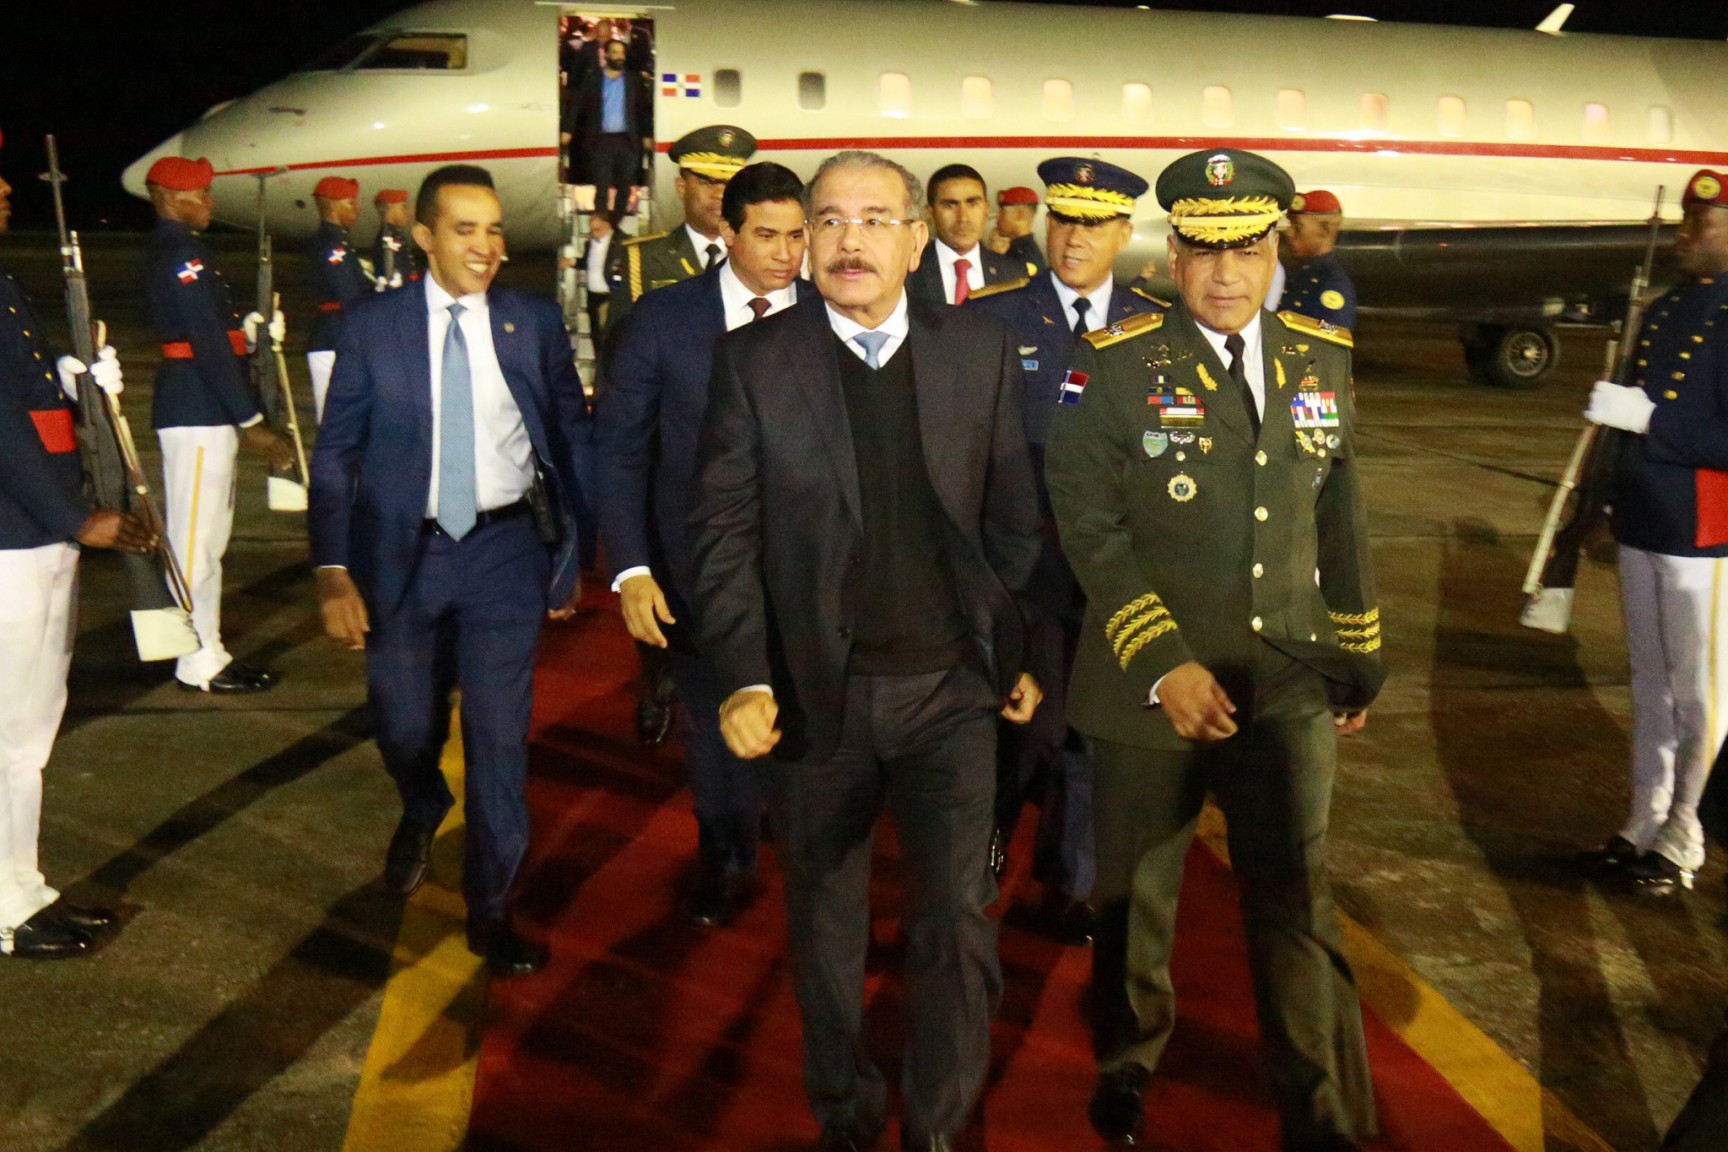 REPÚBLICA DOMINICANA: Danilo Medina regresa al país procedente de República Popular China, tras histórica y fructífera visita de Estado